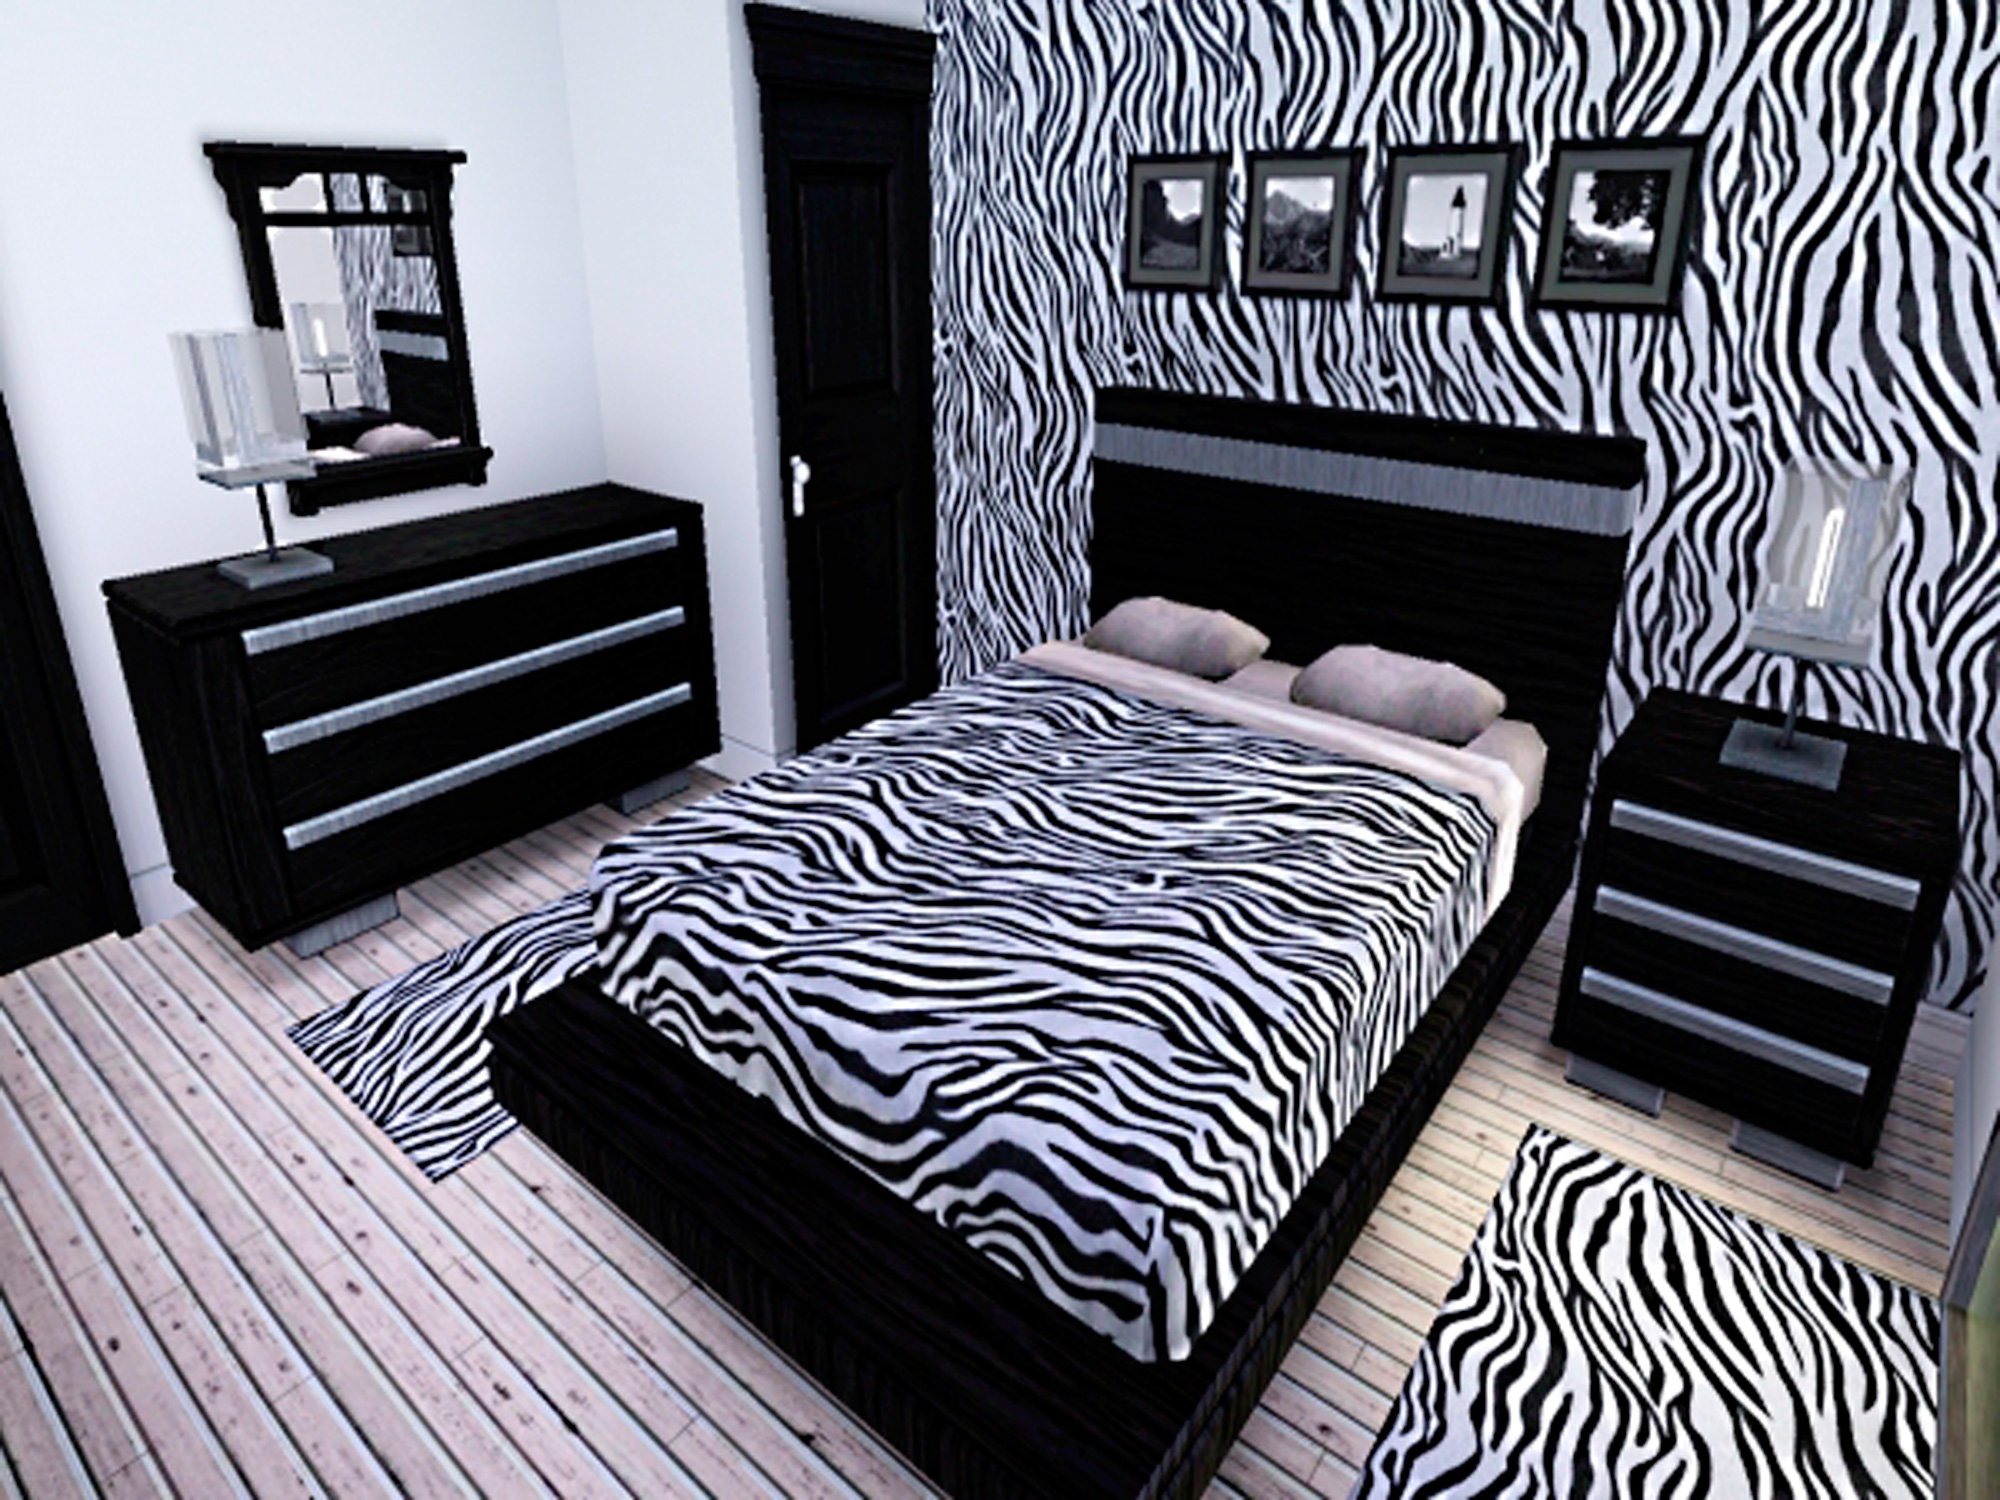 Зебра мебель. Комната в стиле Зебра. Спальня с зеброй. Спальня в стиле Зебра. Спальня в черно белых тонах.